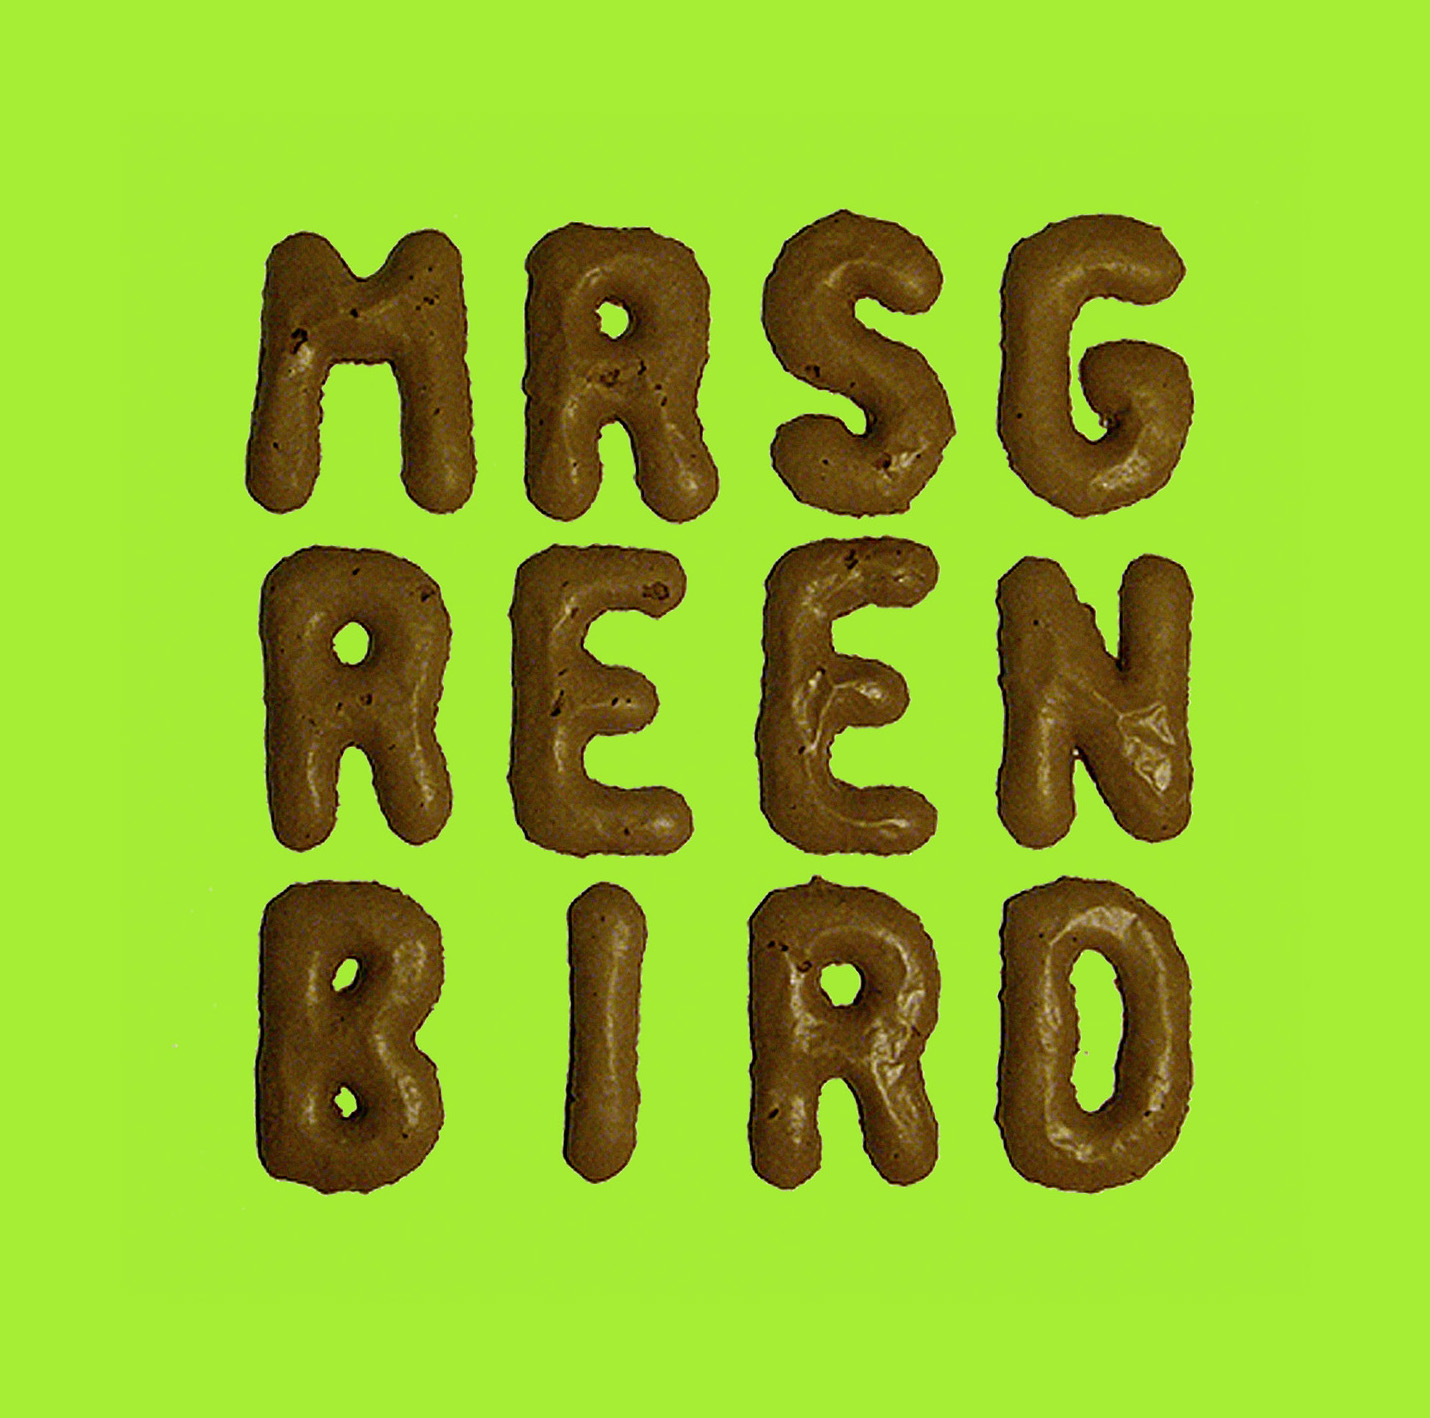 Mrs. Greenbird - "Mrs. Greenbird"